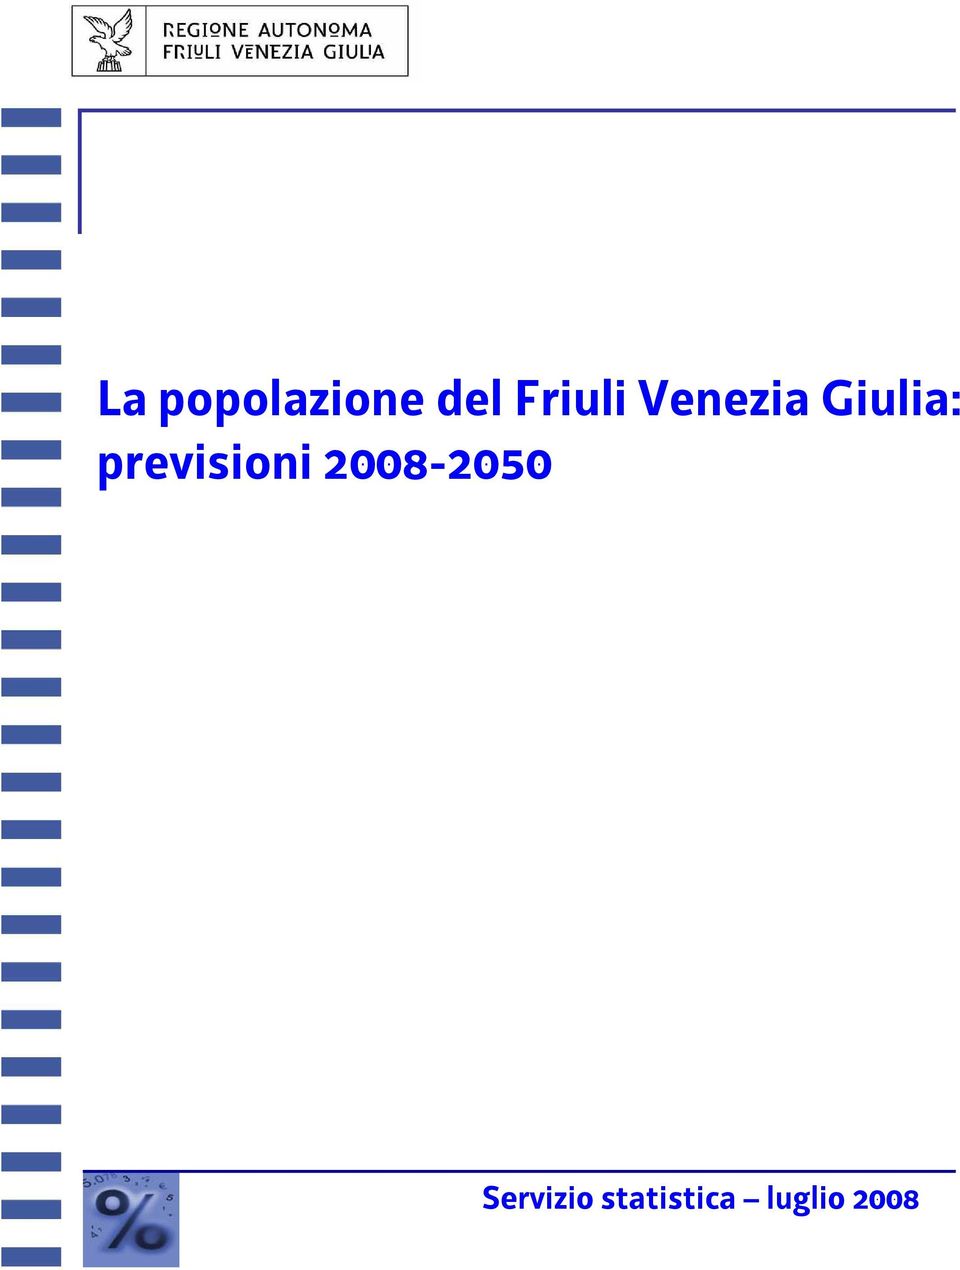 previsioni 2008-2050